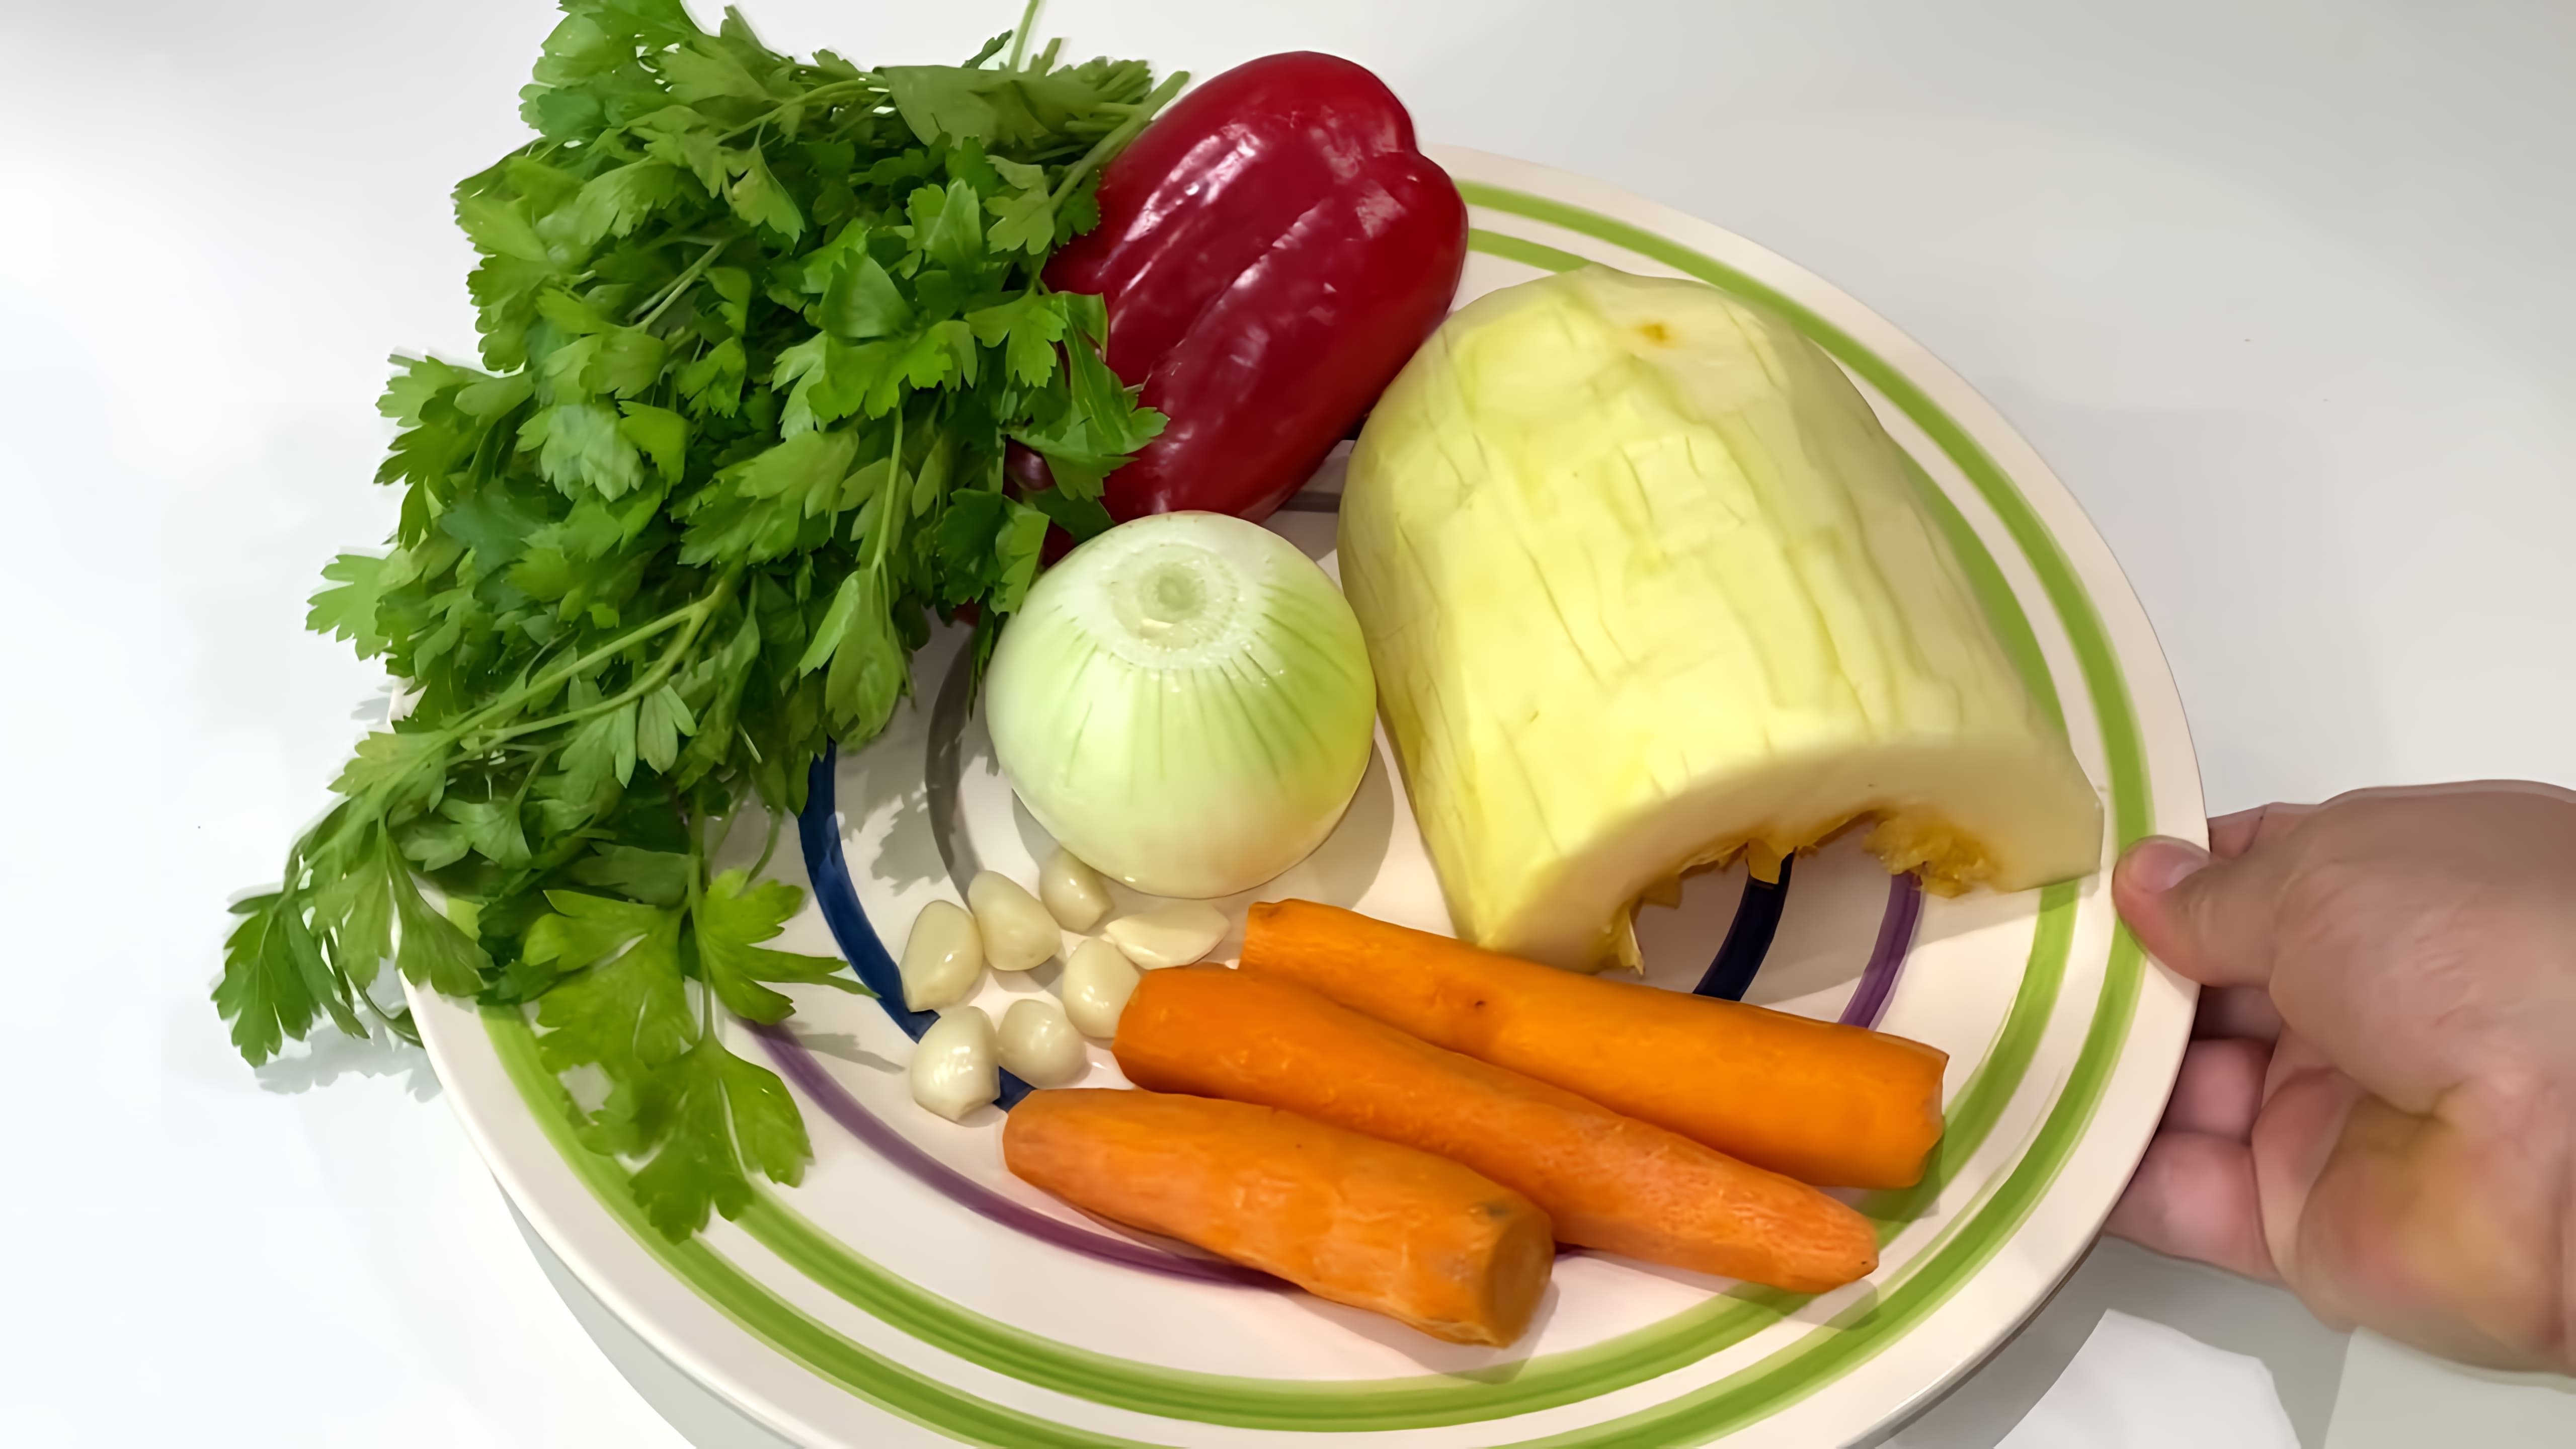 тушеныекабачки#кабачки#какприготовить# Вкусный рецепт блюда из кабачков. Тушеные кабачки с овощами. 